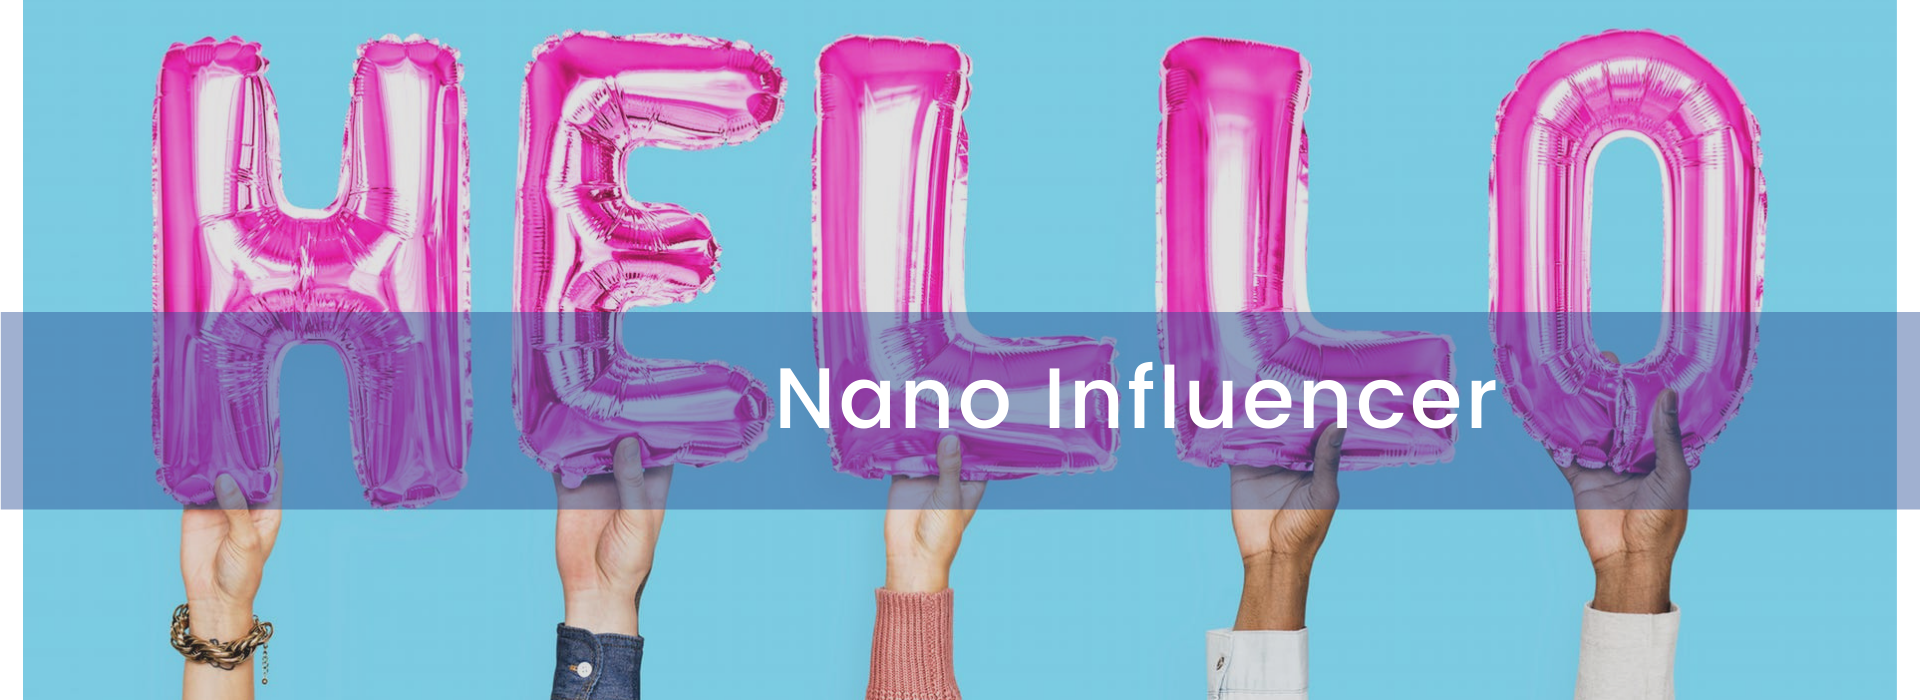 Nano Influencer